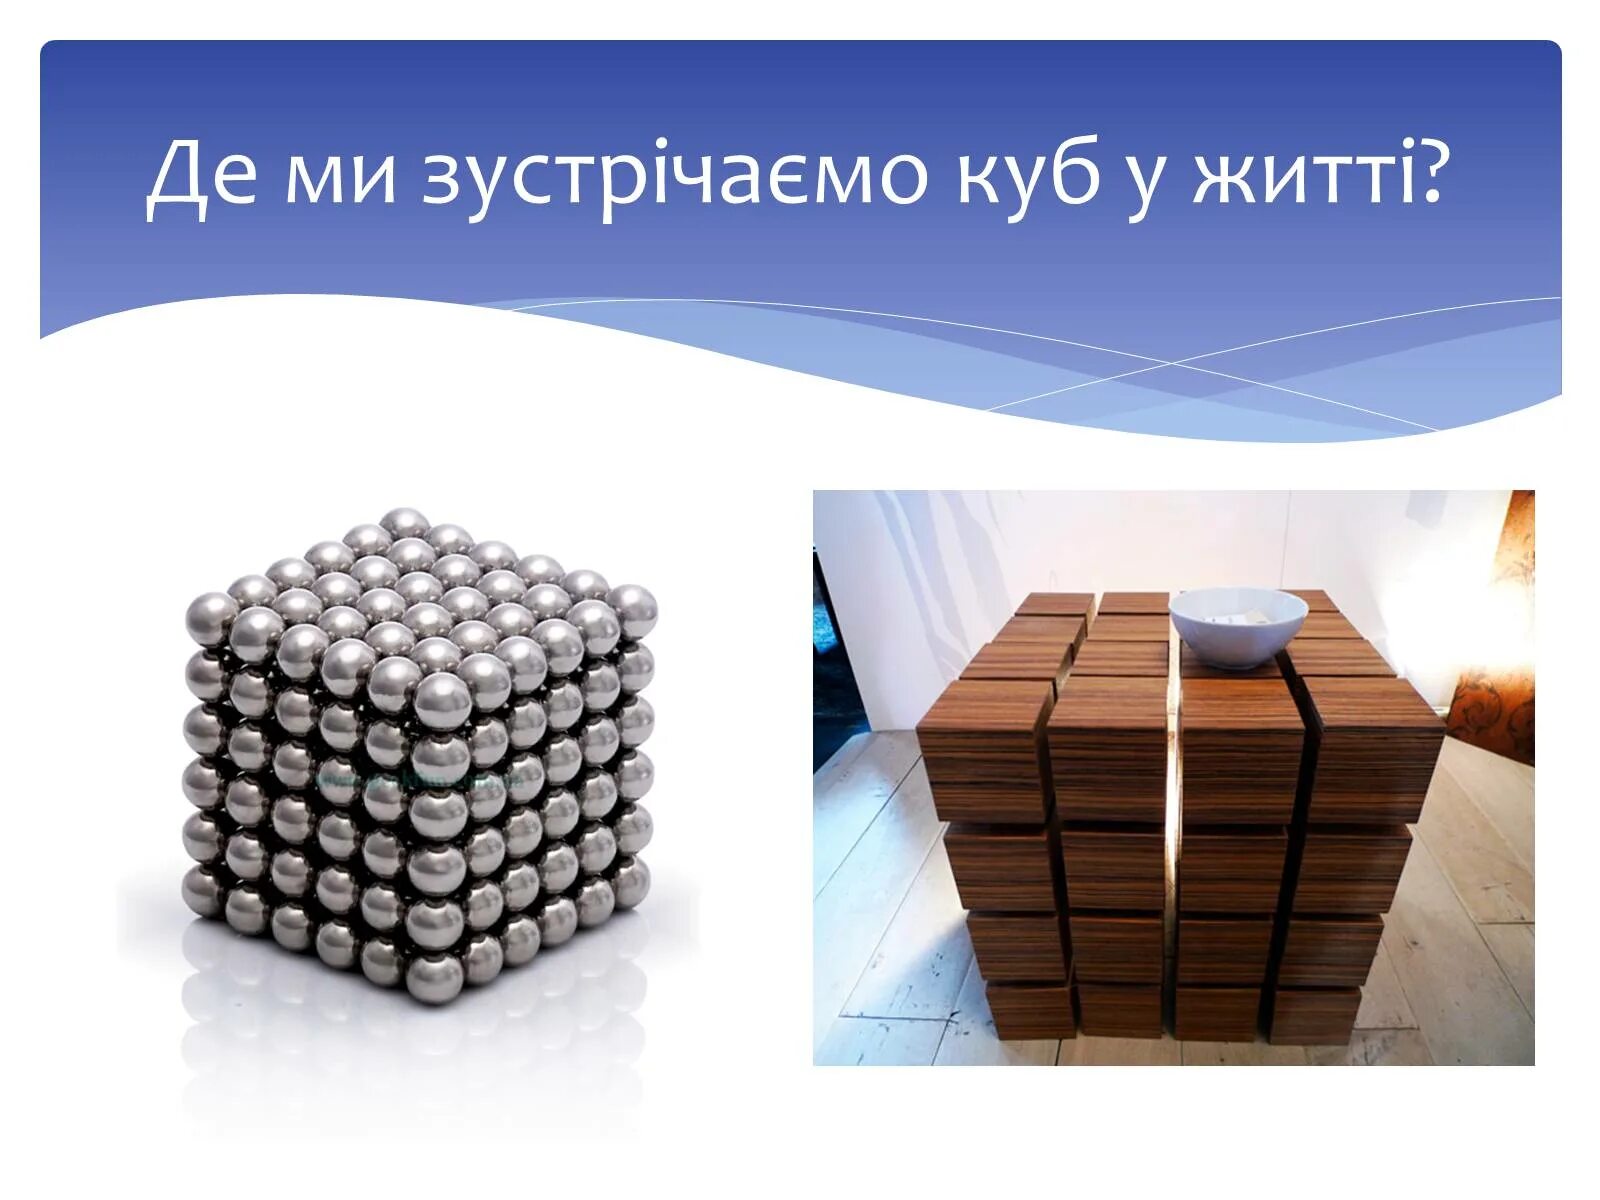 Презентация на тему куб. Слайд куб. Сообщение на тему куб. Проект на тему куб.